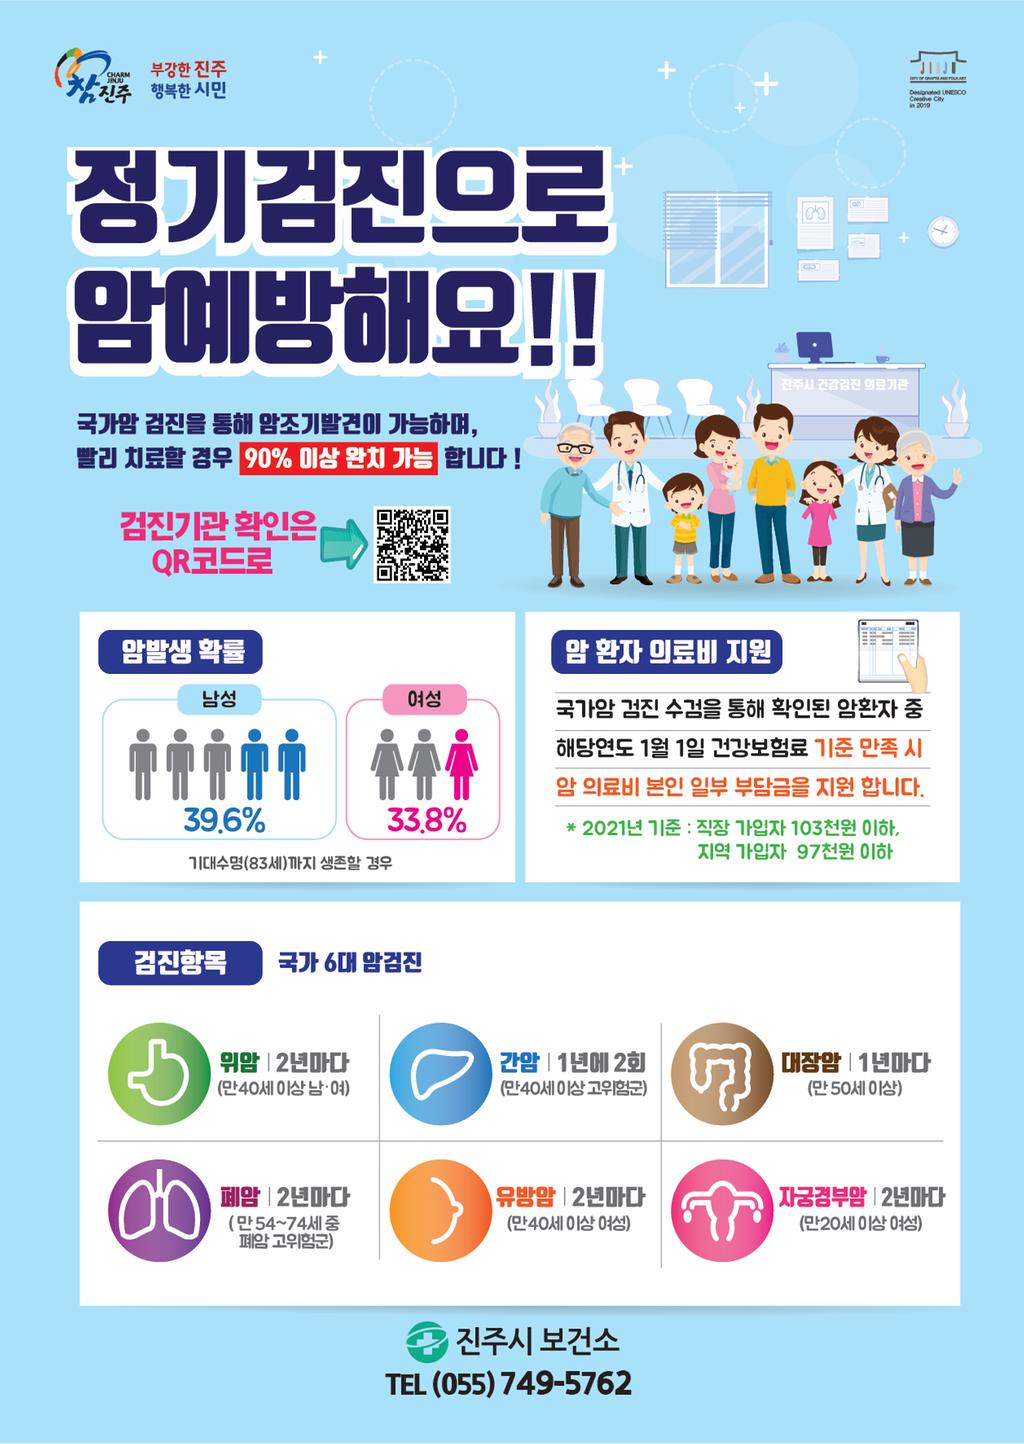 4월 건강길라잡이(국가암 건강검진 홍보)